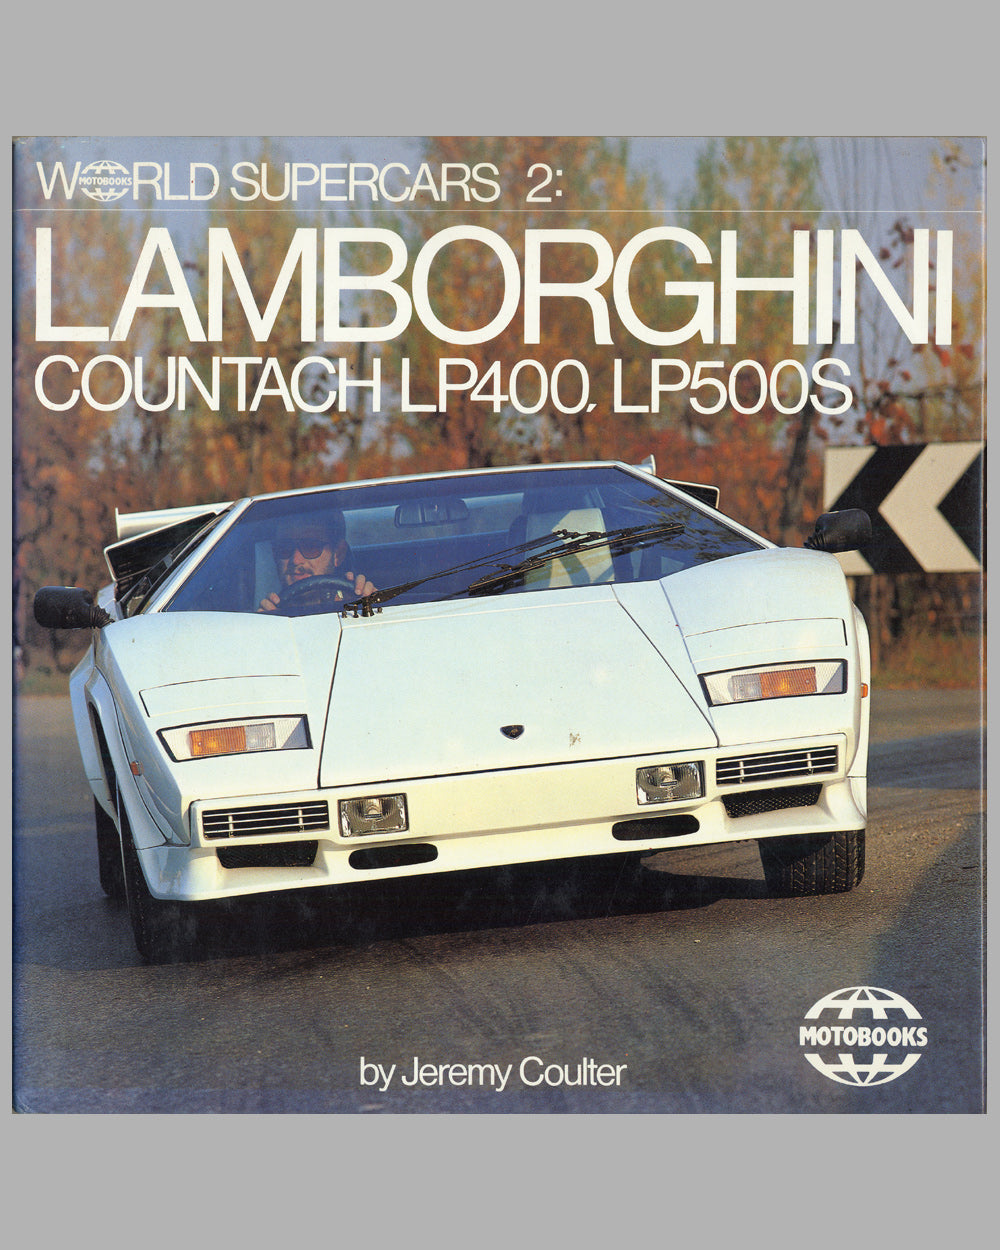 Lamborghini Countach LP400, LP500S book by Jeremy Coulter, 1985 ed